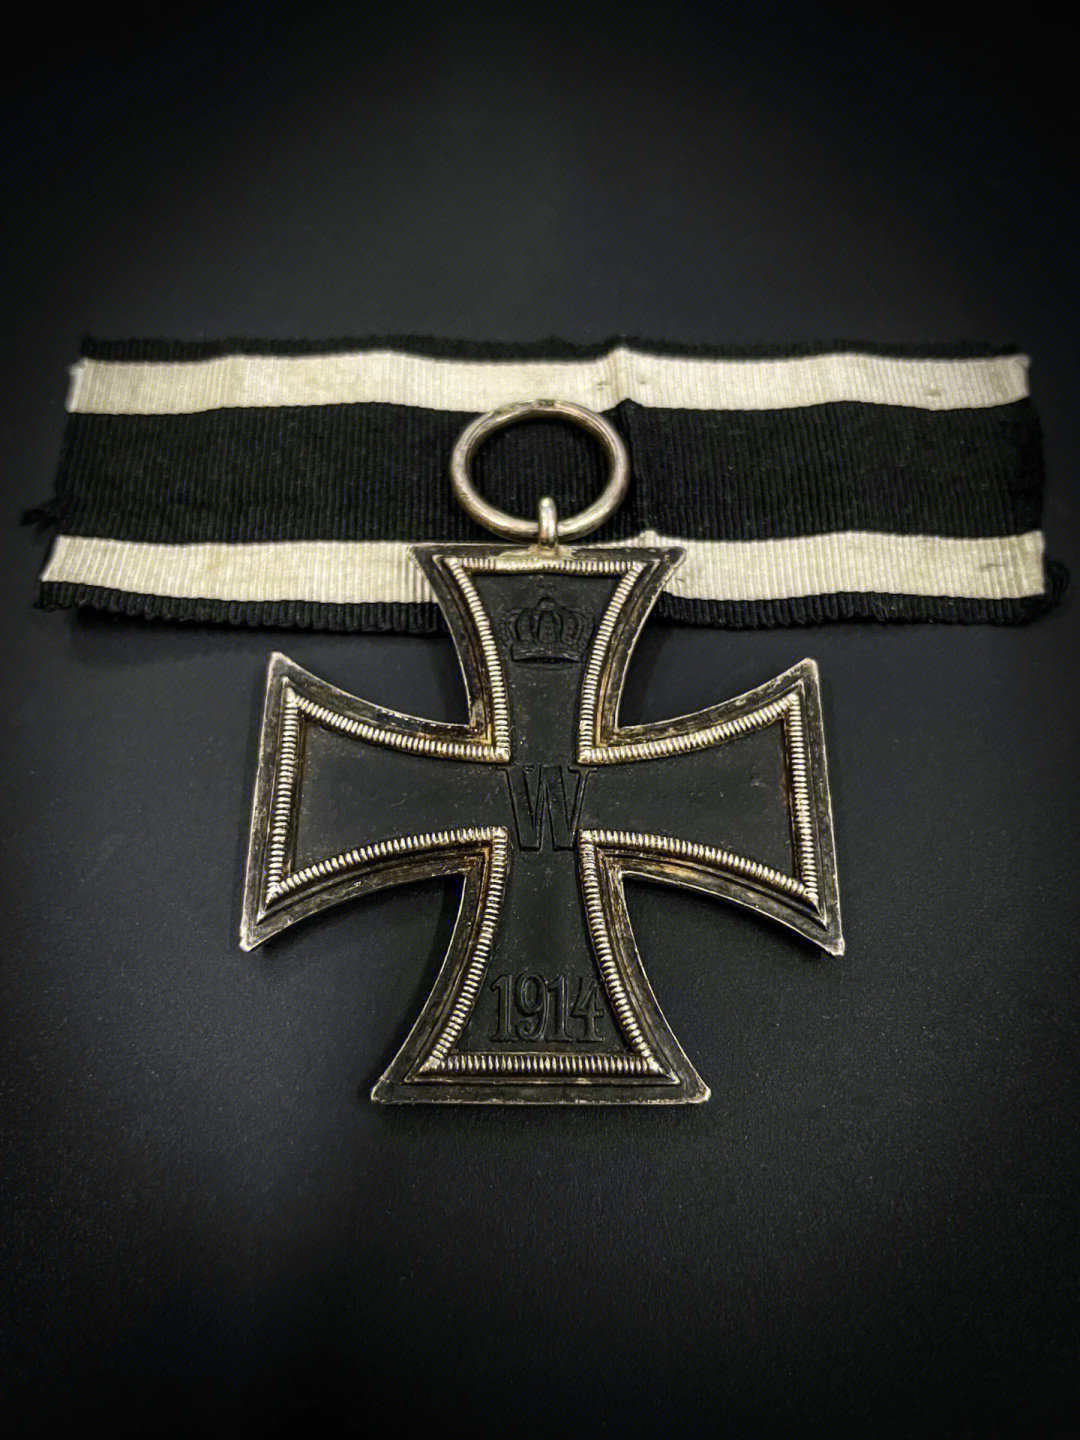 1914版铁十字勋章